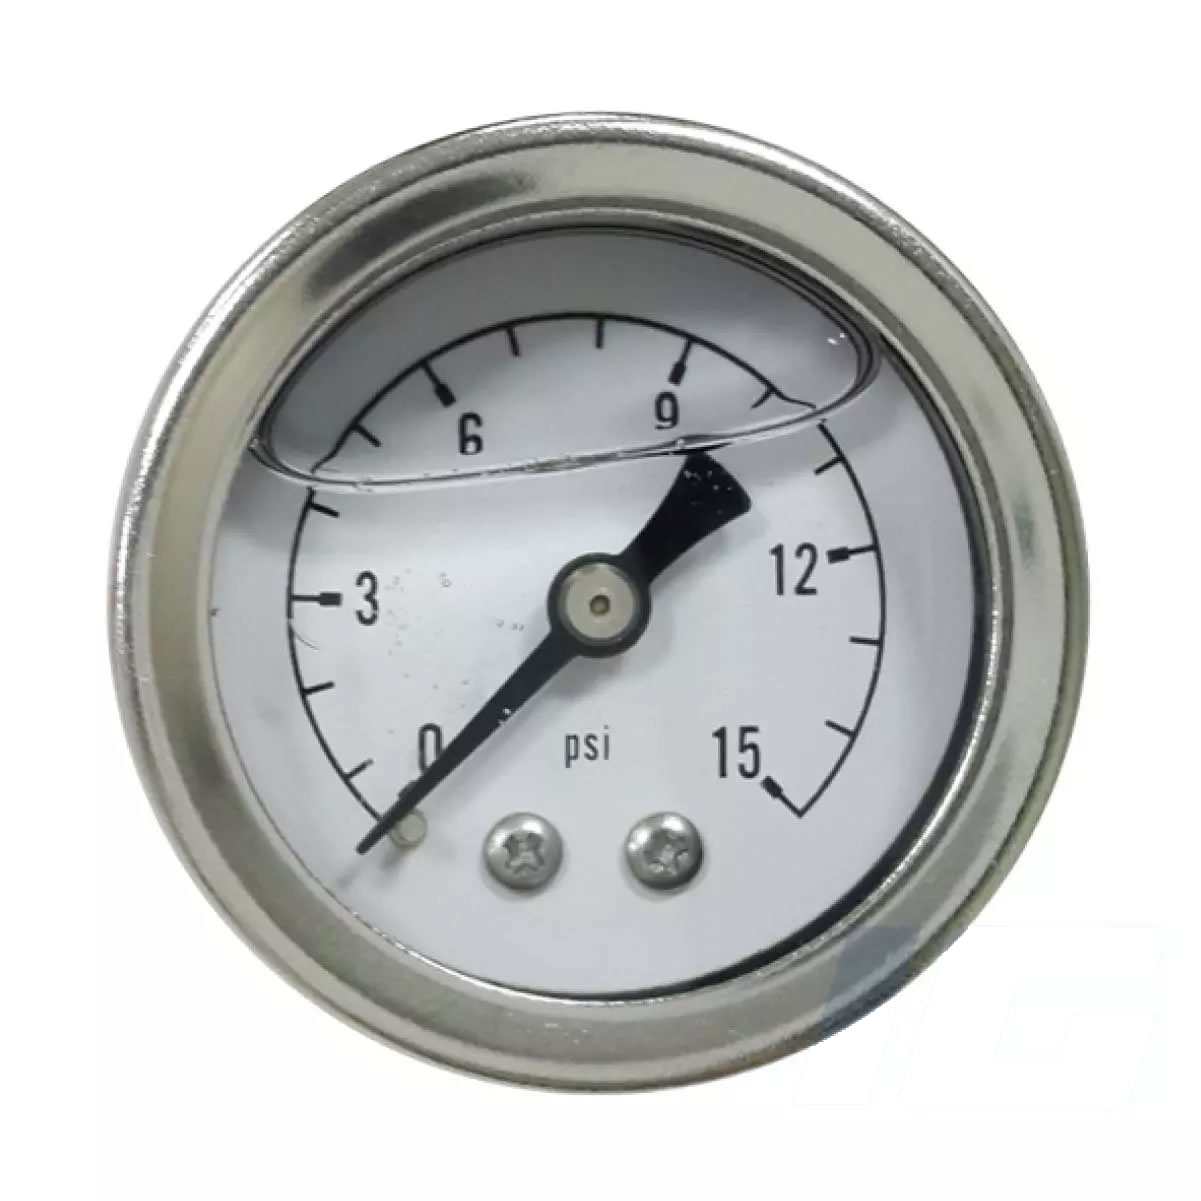 pressure industrial gauges